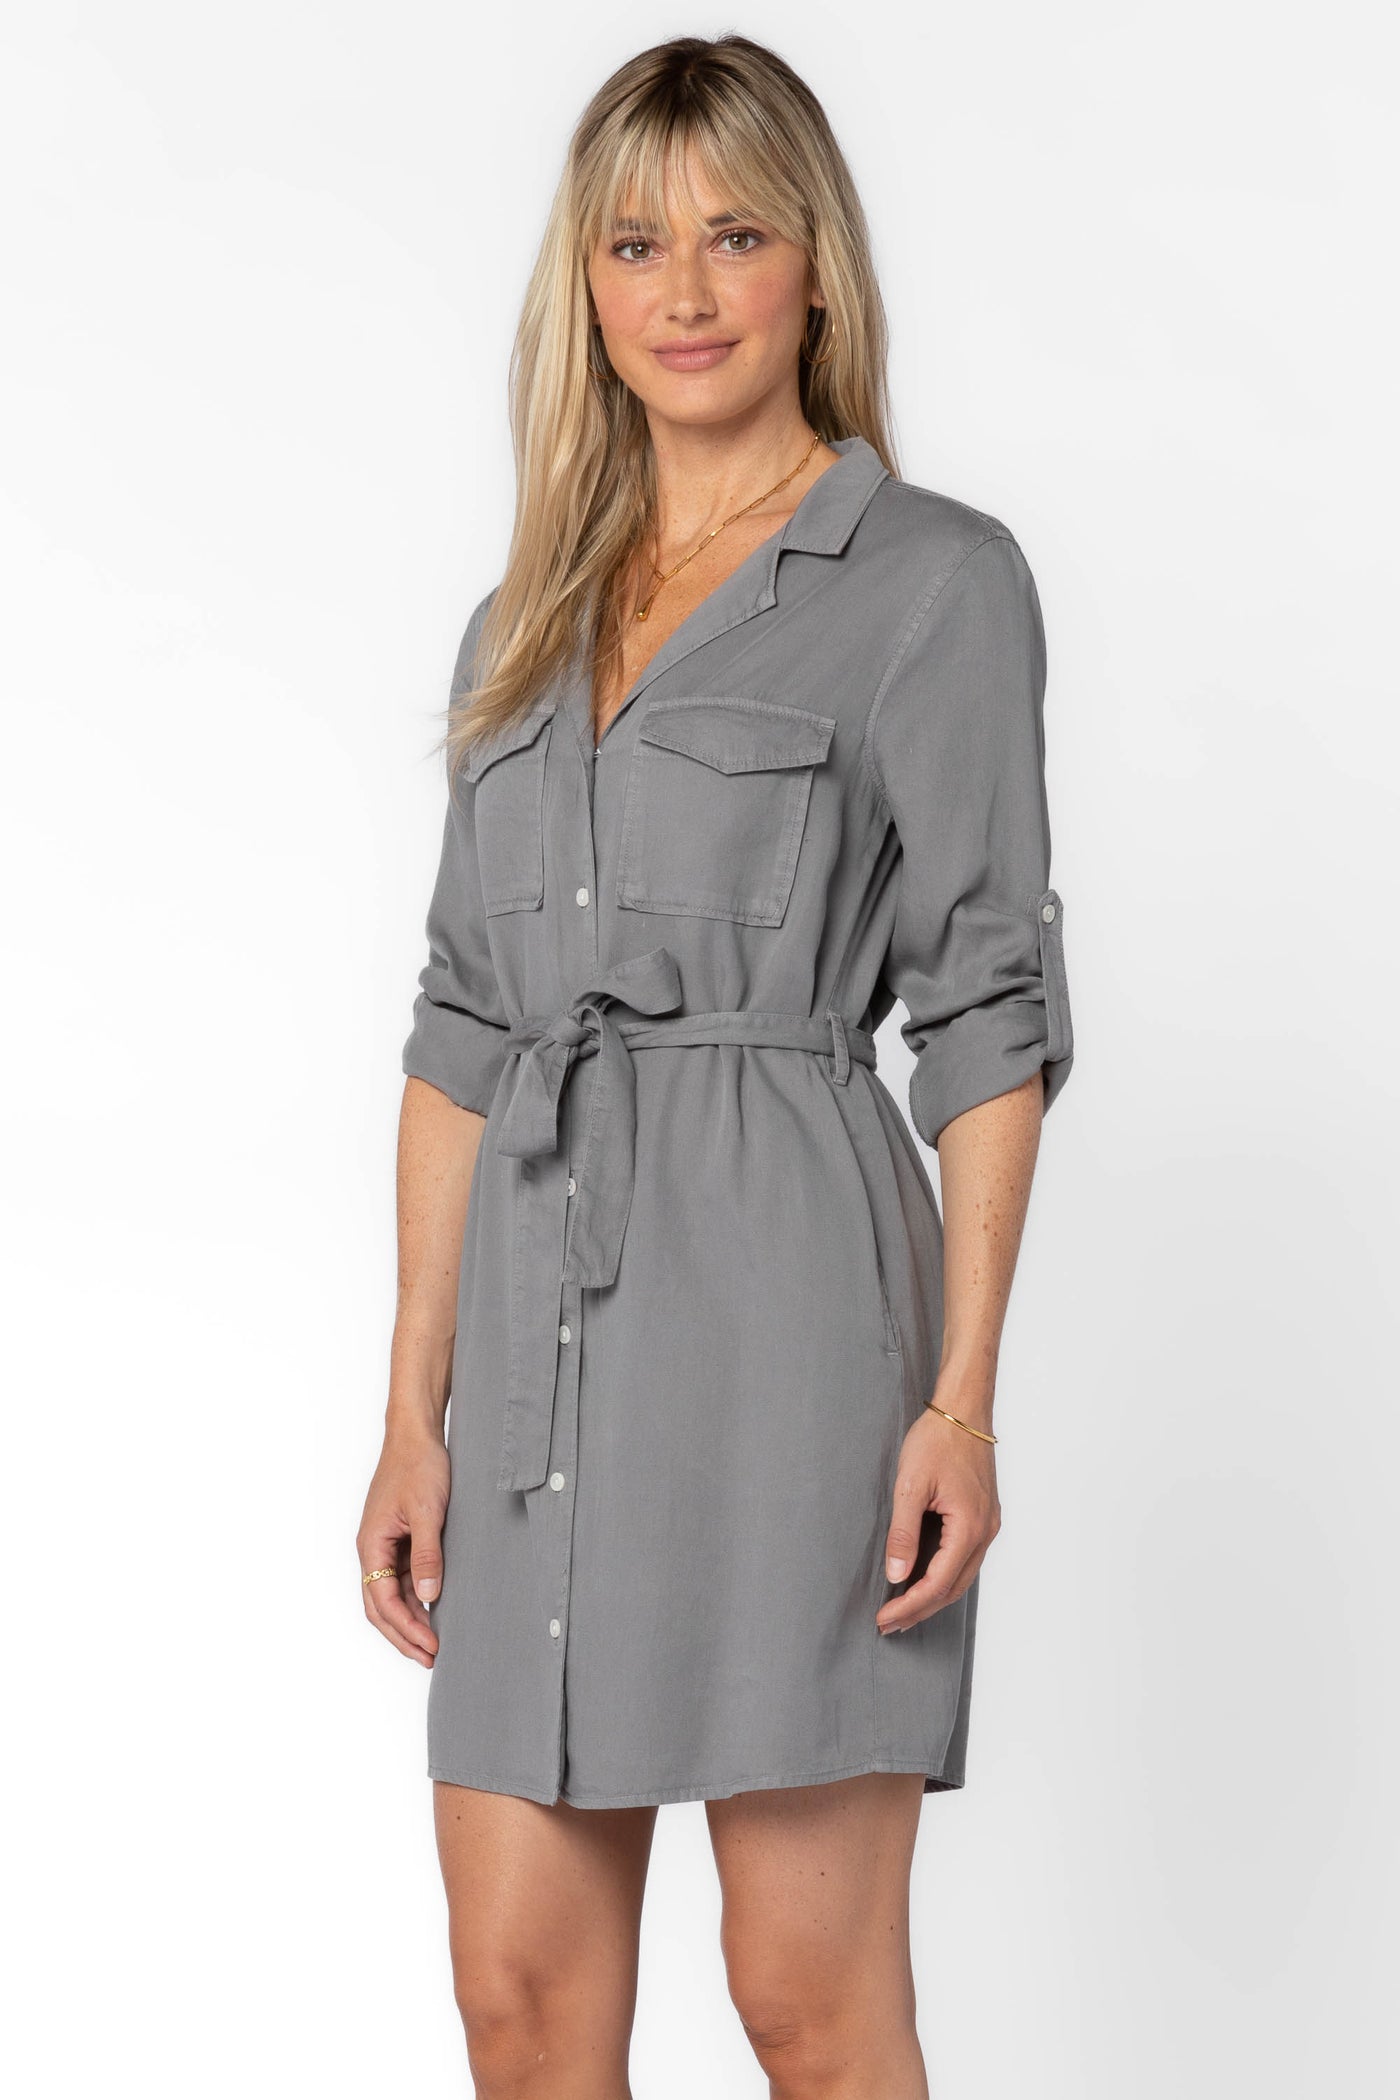 Dalisa Grey Dress - Dresses - Velvet Heart Clothing